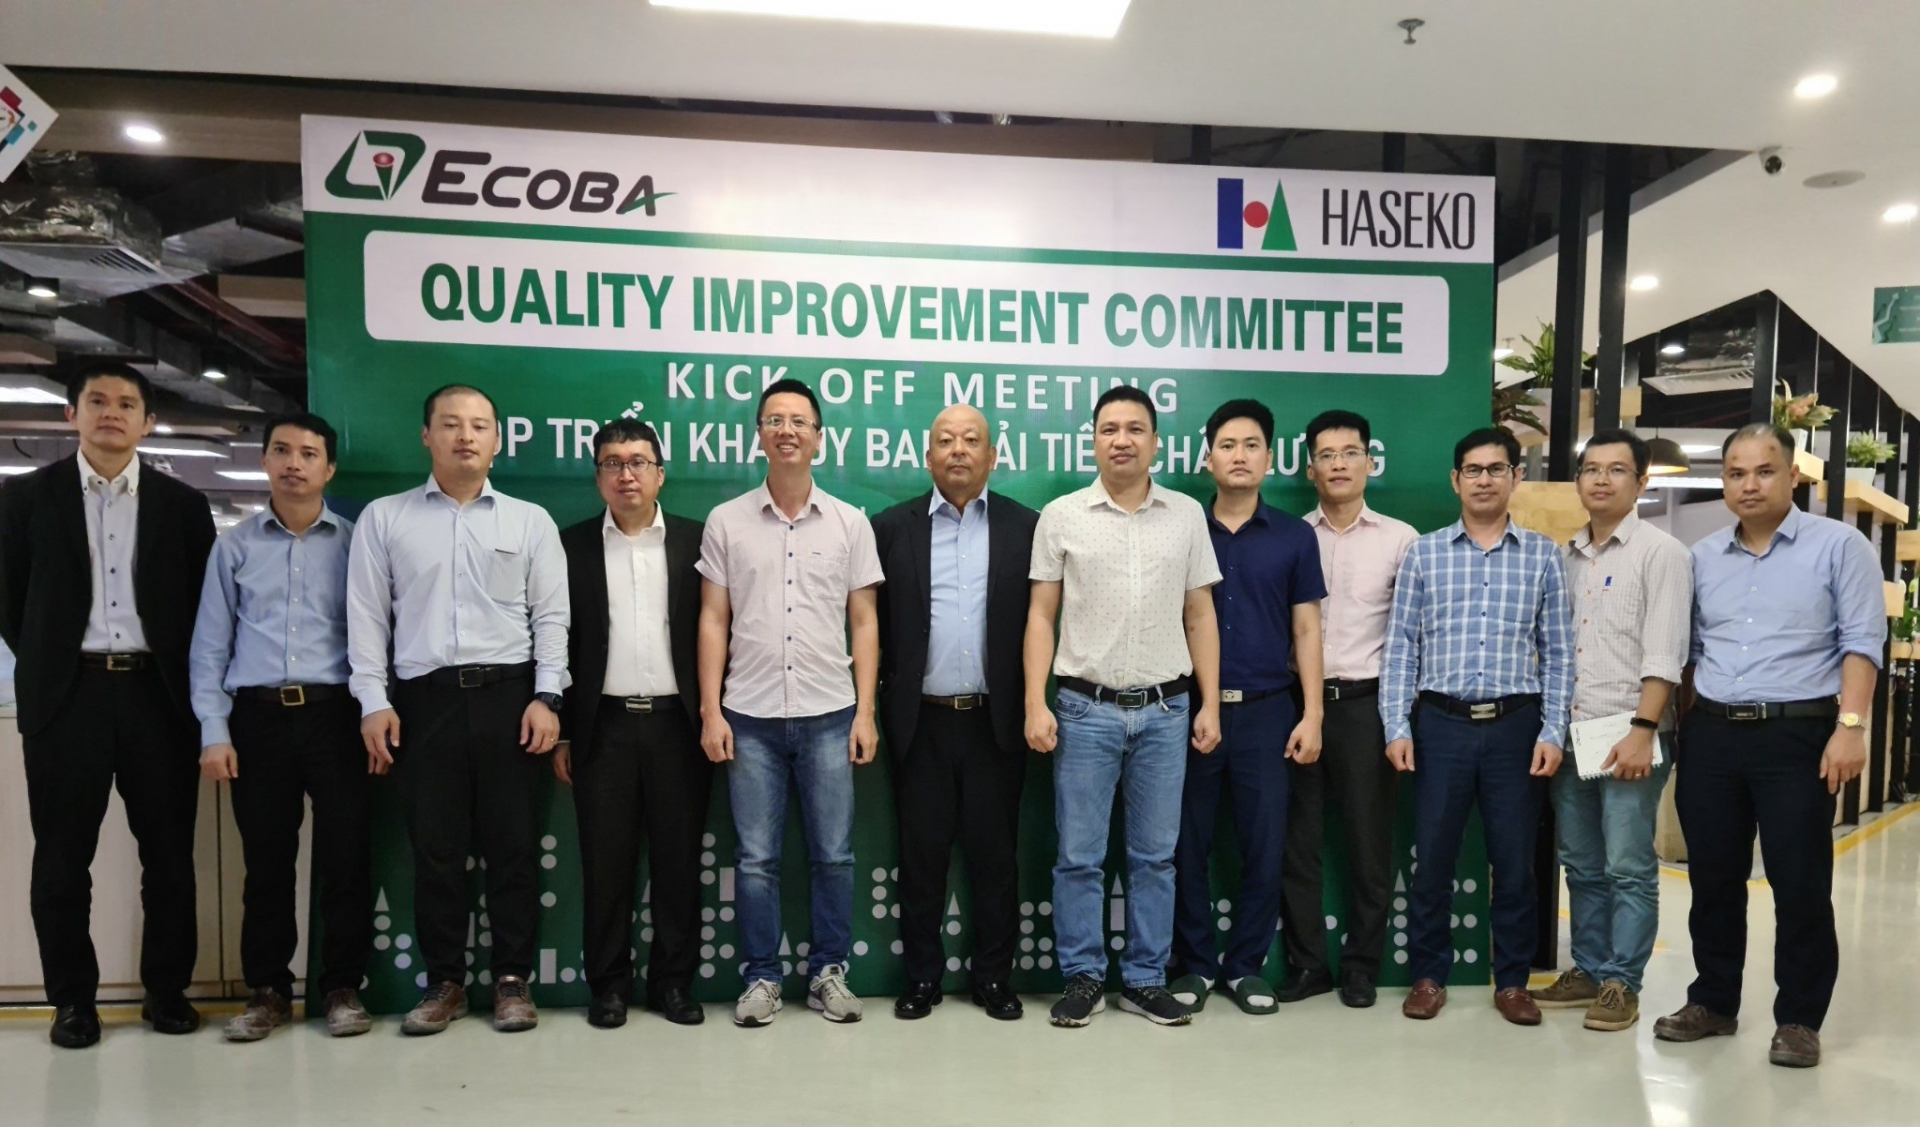 Ecoba và Haseko hợp tác triển khai Ủy ban Cải tiến chất lượng, đưa chất lượng 5 sao vào công trình